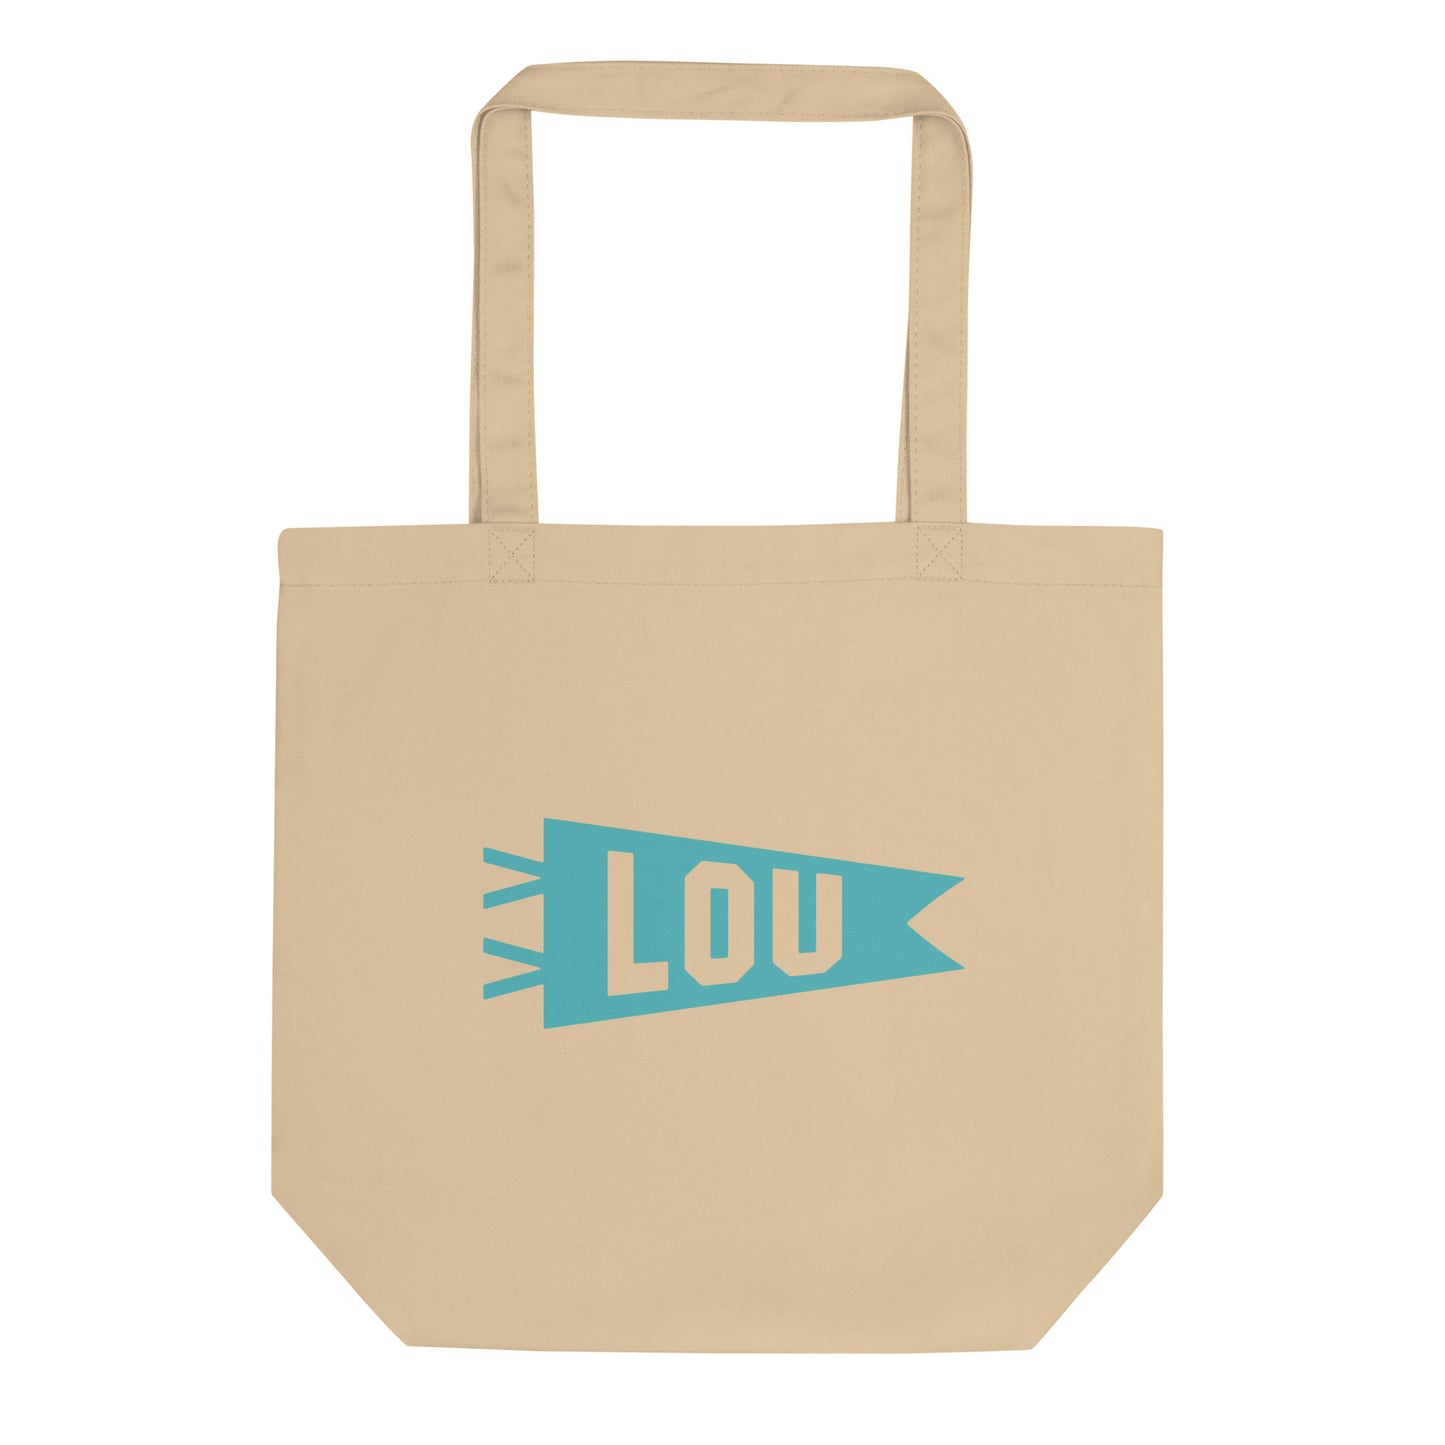 Cool Travel Gift Organic Tote Bag - Viking Blue • LOU Louisville • YHM Designs - Image 01